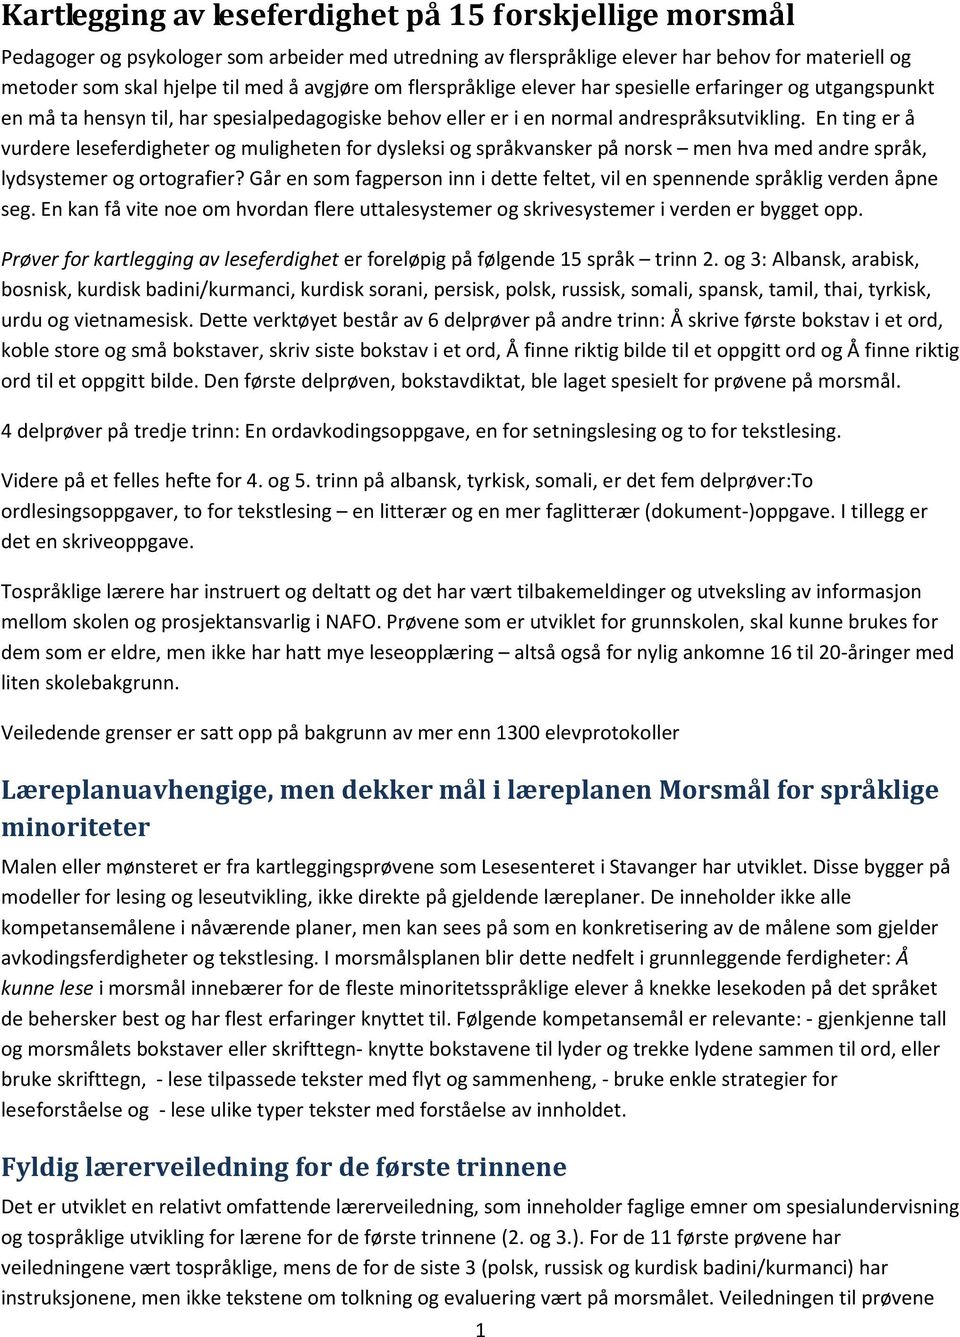 En ting er å vurdere leseferdigheter og muligheten for dysleksi og språkvansker på norsk men hva med andre språk, lydsystemer og ortografier?